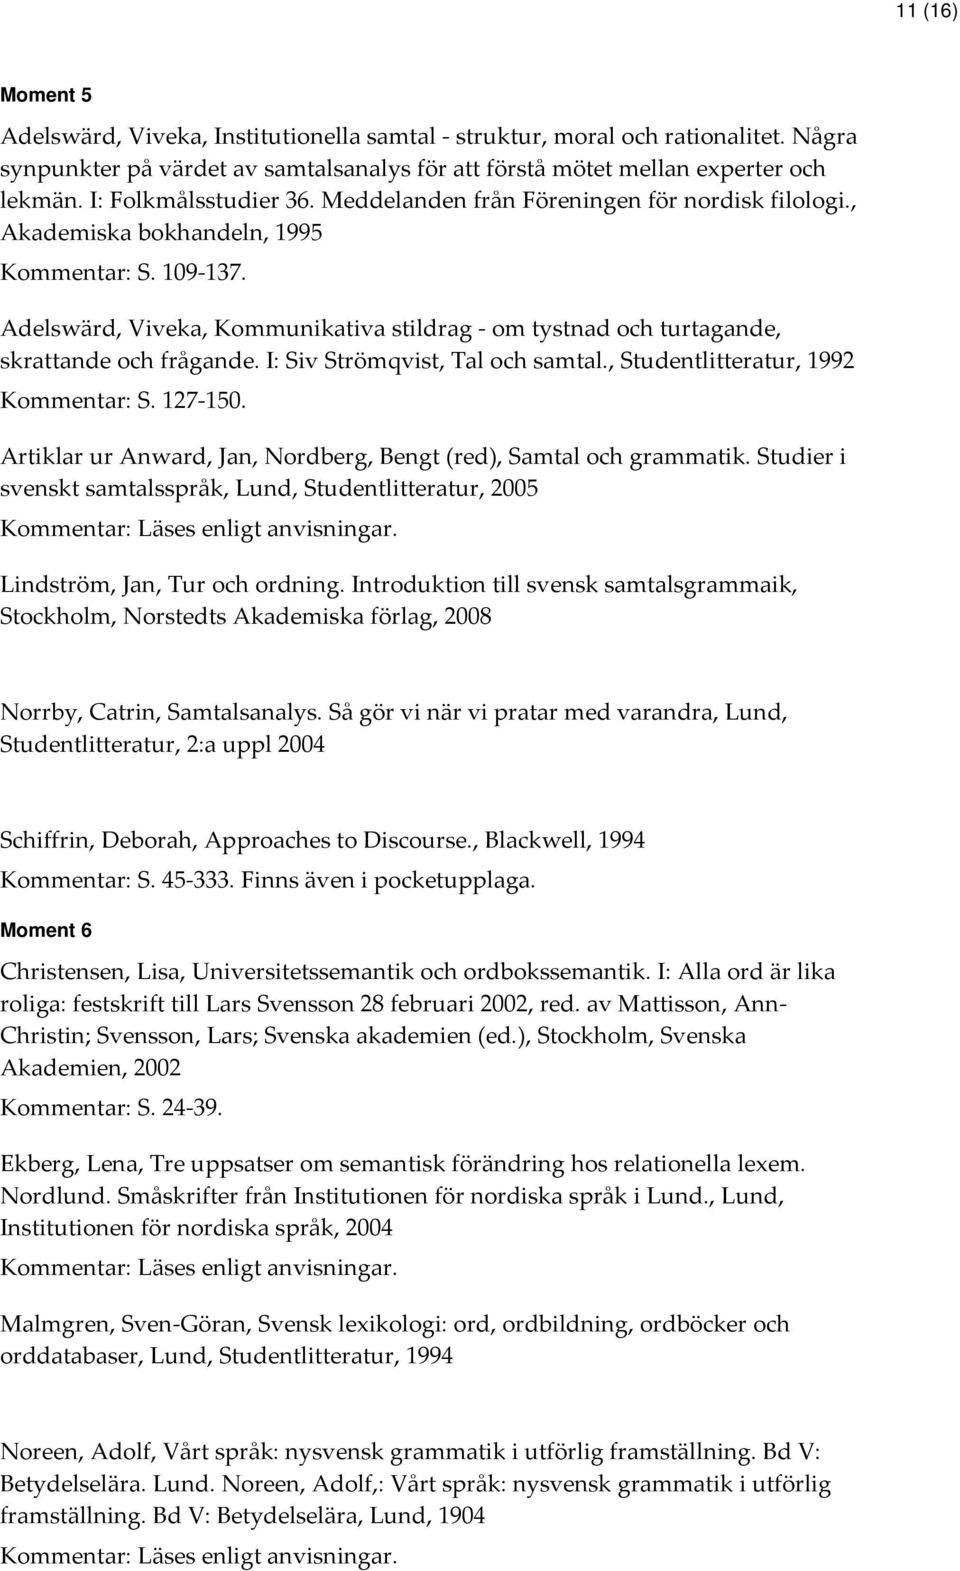 Adelswärd, Viveka, Kommunikativa stildrag - om tystnad och turtagande, skrattande och frågande. I: Siv Strömqvist, Tal och samtal., Studentlitteratur, 1992 Kommentar: S. 127-150.